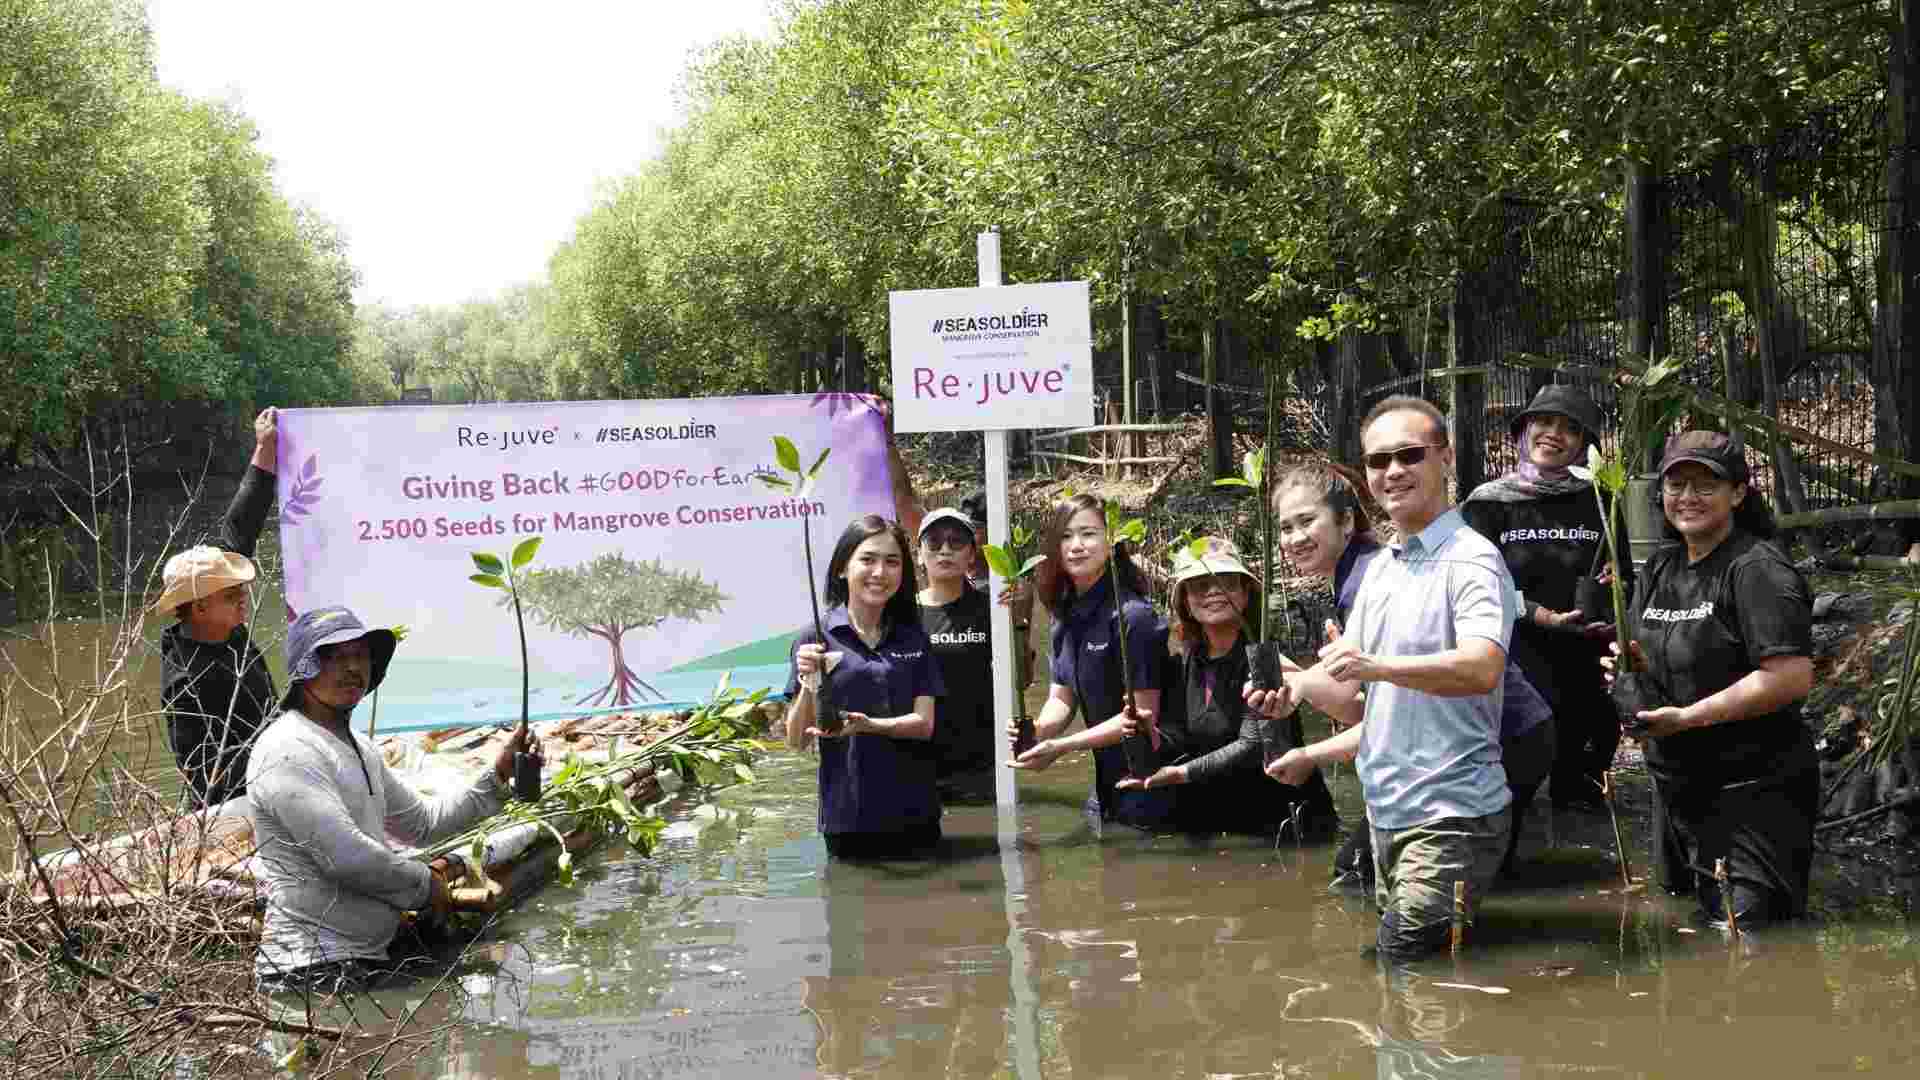 Melanjutkan Aksi Peduli Terhadap Lingkungan Re.juve Tanam 2.500 Bibit Mangrove Bersama Seasoldier